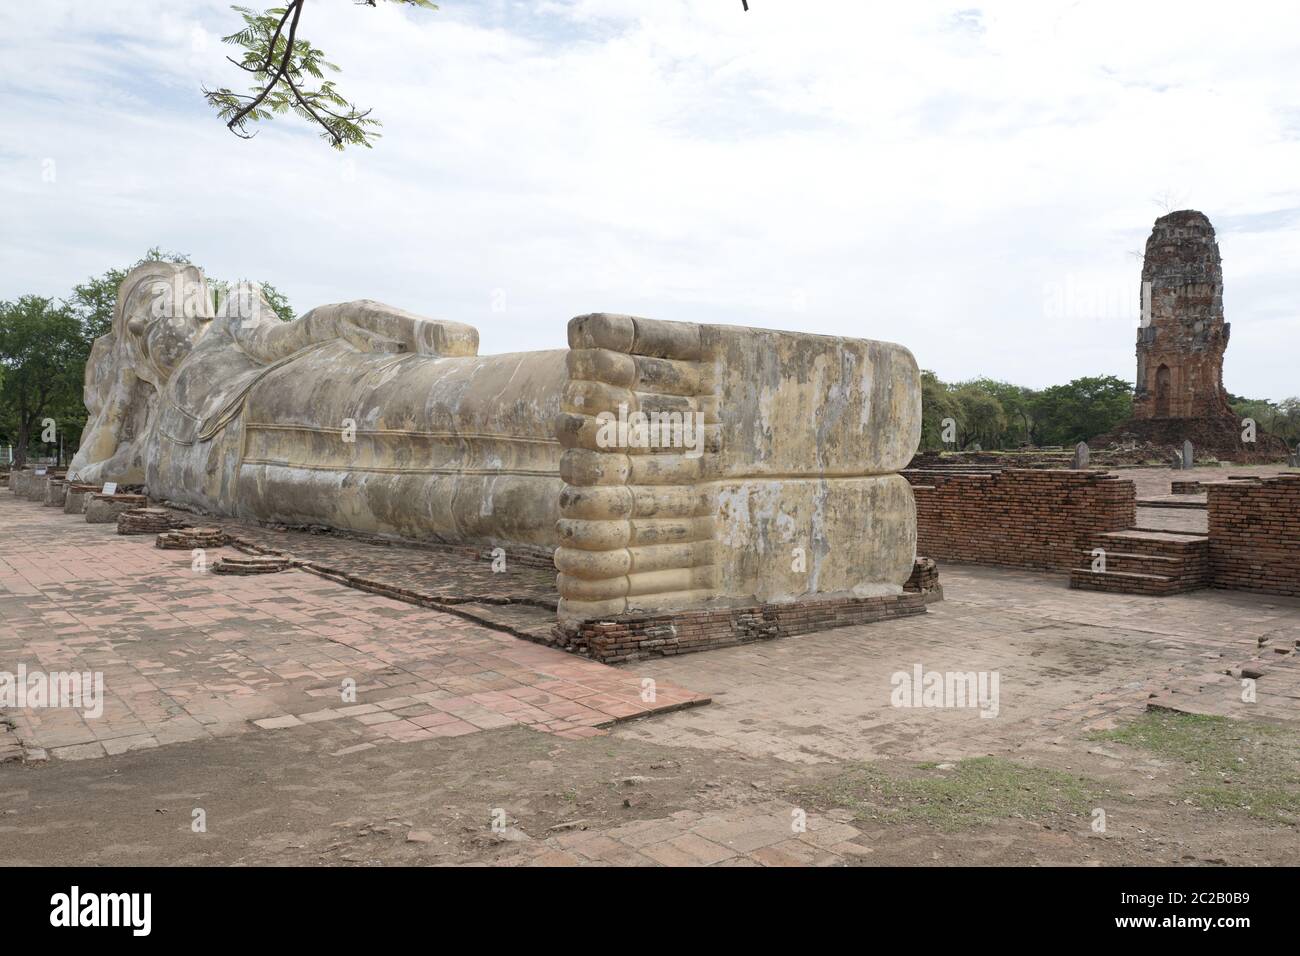 La statue de Bouddha couché, dans l'ancienne capitale de la Thaïlande, aujourd'hui site classé au patrimoine mondial de l'UNESCO, à Ayutthaya. Banque D'Images